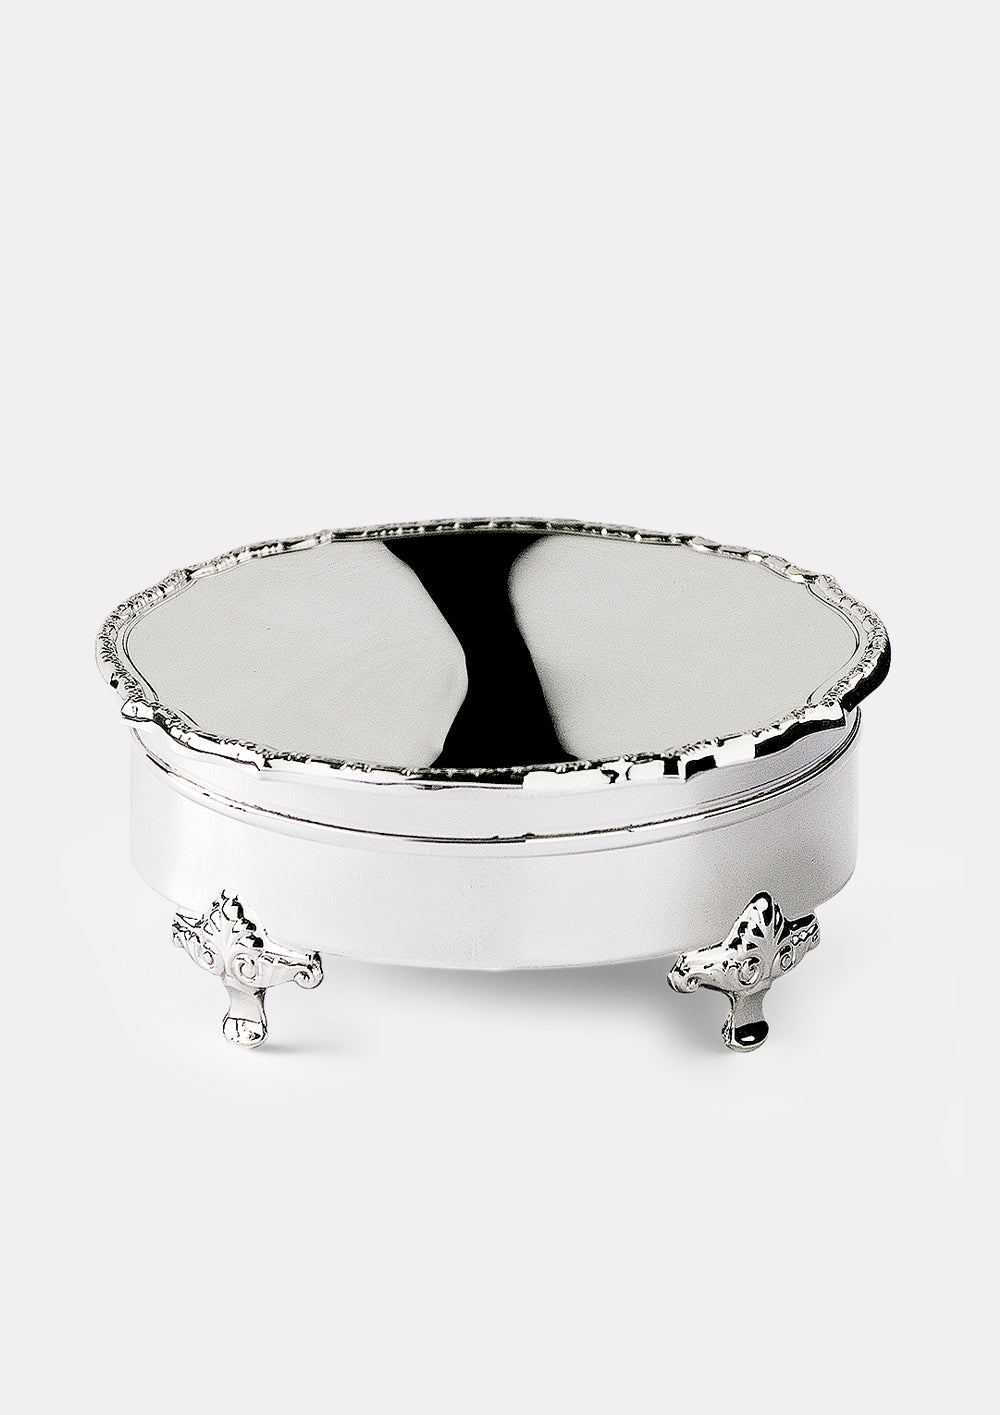 Jewelery box in silver